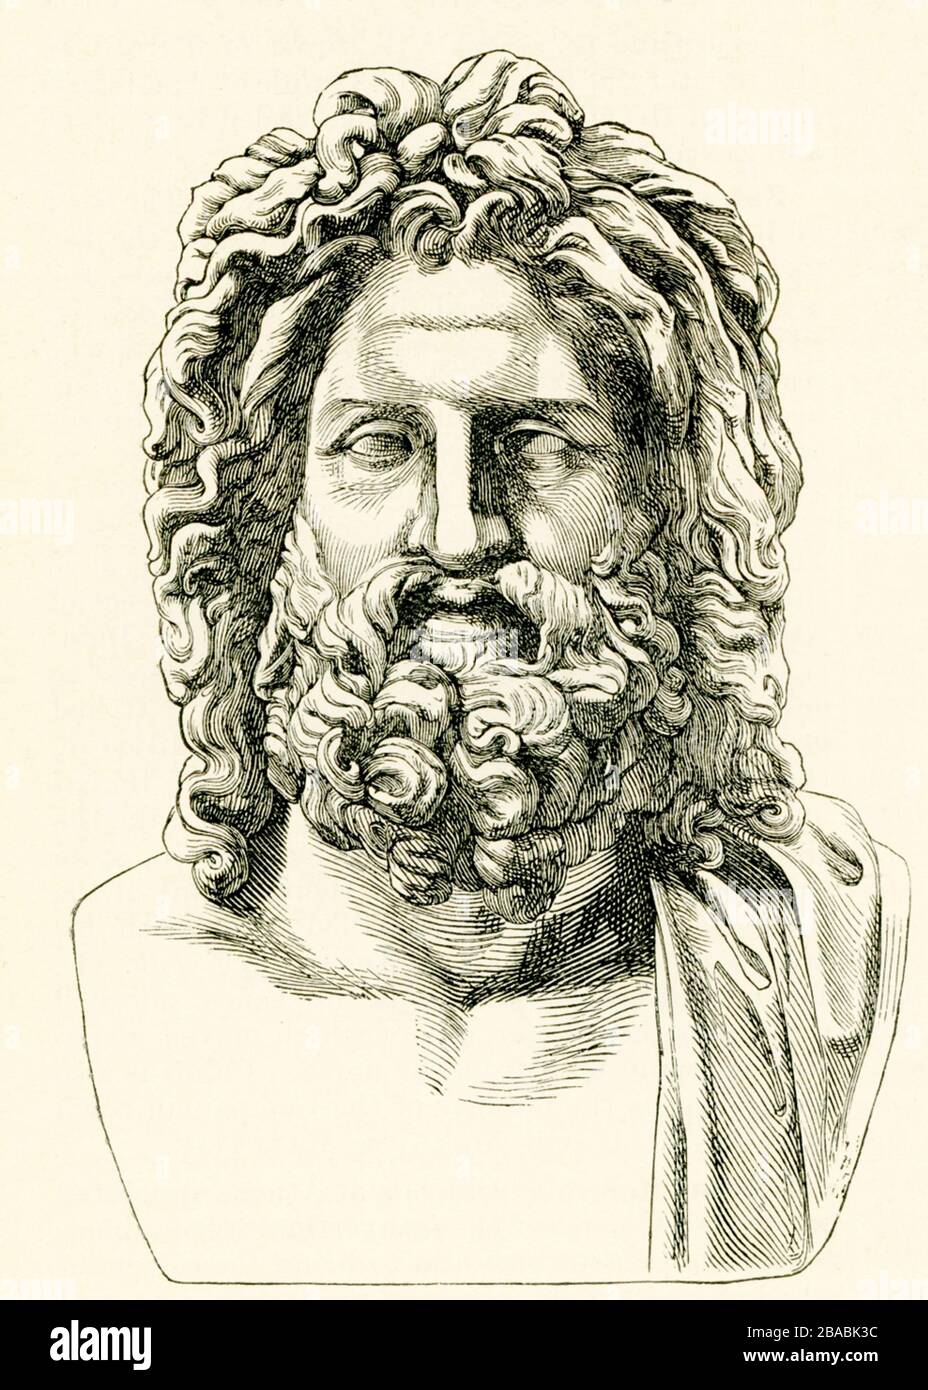 Le Zeus d'Otricoli, un ancien buste romain trouvé à Otricoli en 1775 pendant l'excavation financée par le Pape Pie VI Il est exposé dans la Sala Rotonda du musée du Vatican Pio-Clementine. Zeus est le dieu du ciel, la foudre et le tonnerre dans la religion et le mythe de la Grèce antique, et le roi des dieux sur le Mont Olympe. Banque D'Images